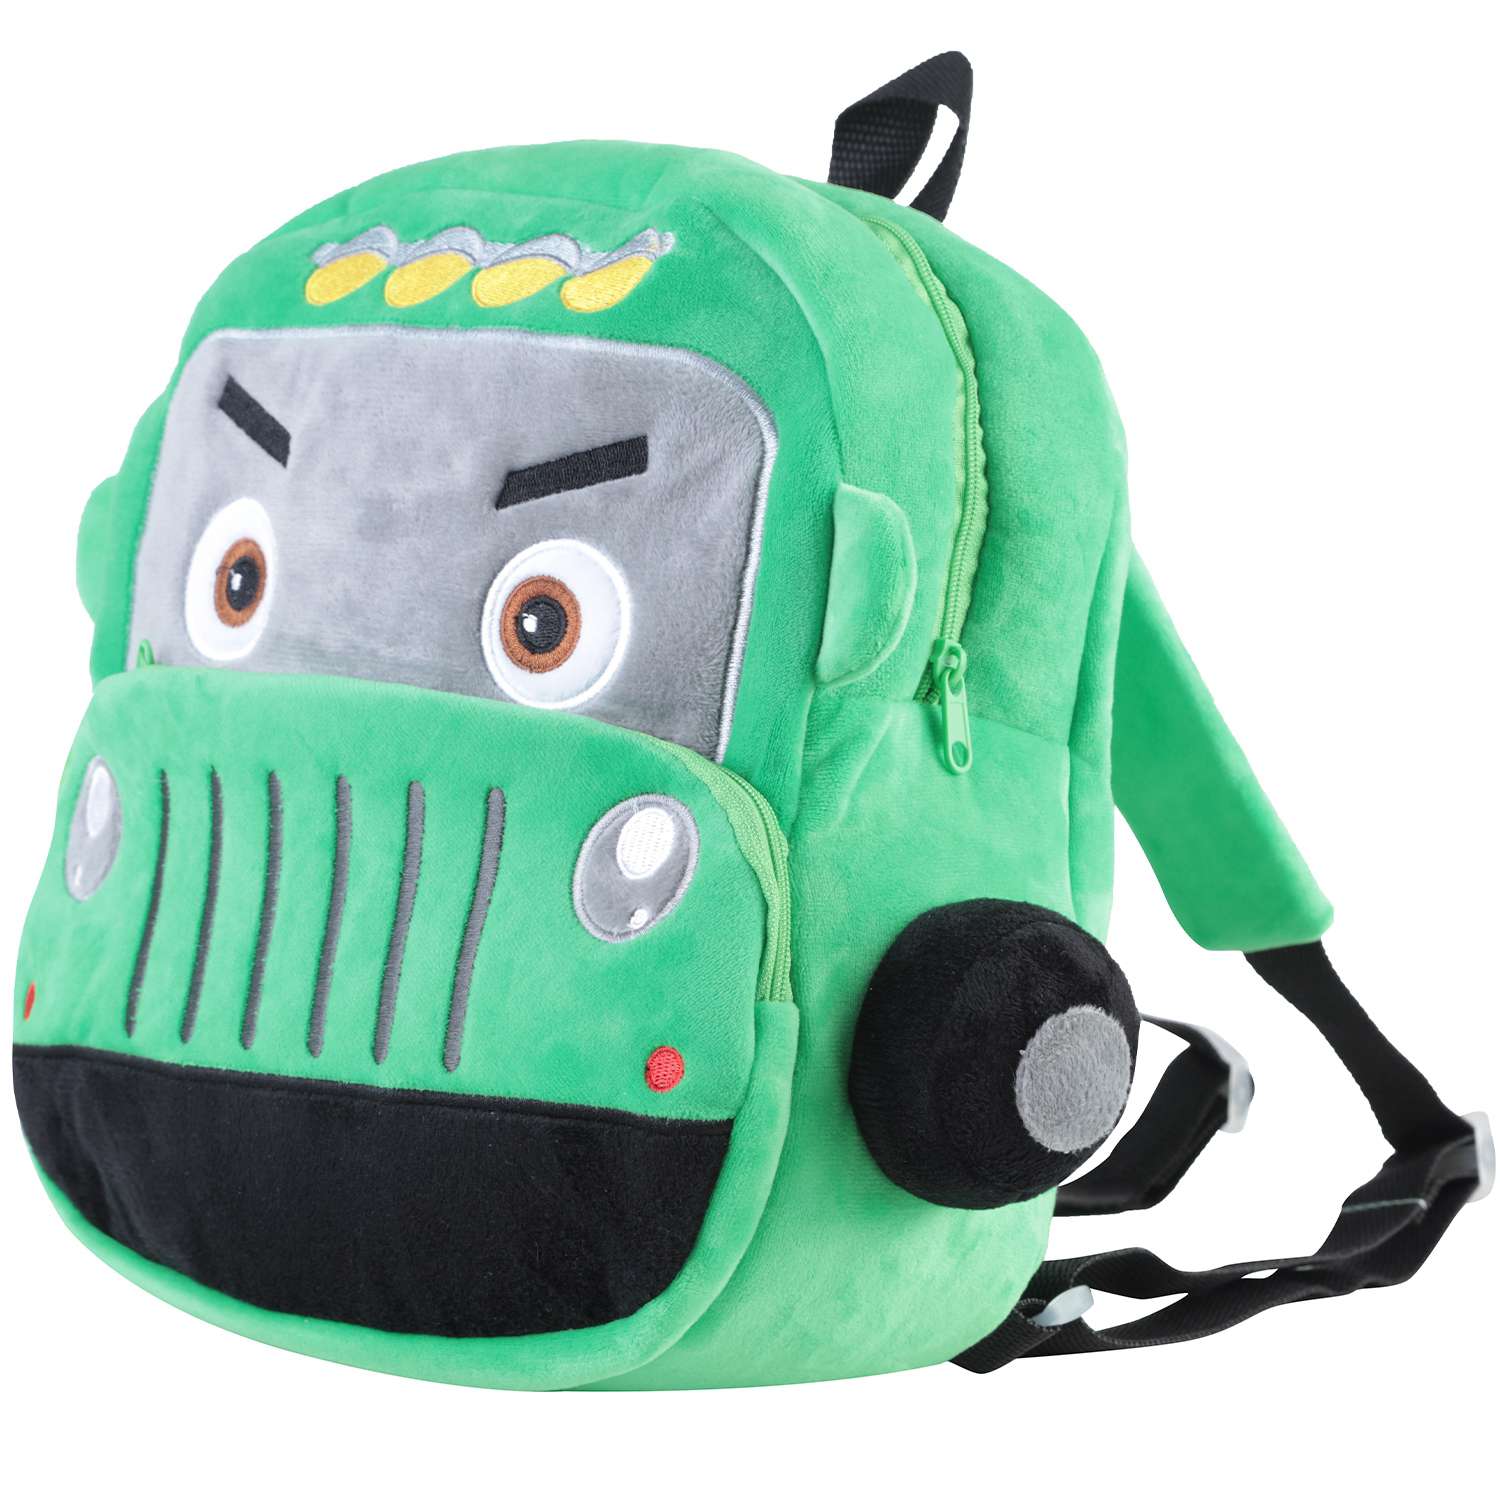 Рюкзак детский плюшевый 2501-145 Машинка 28*22*8см зеленый